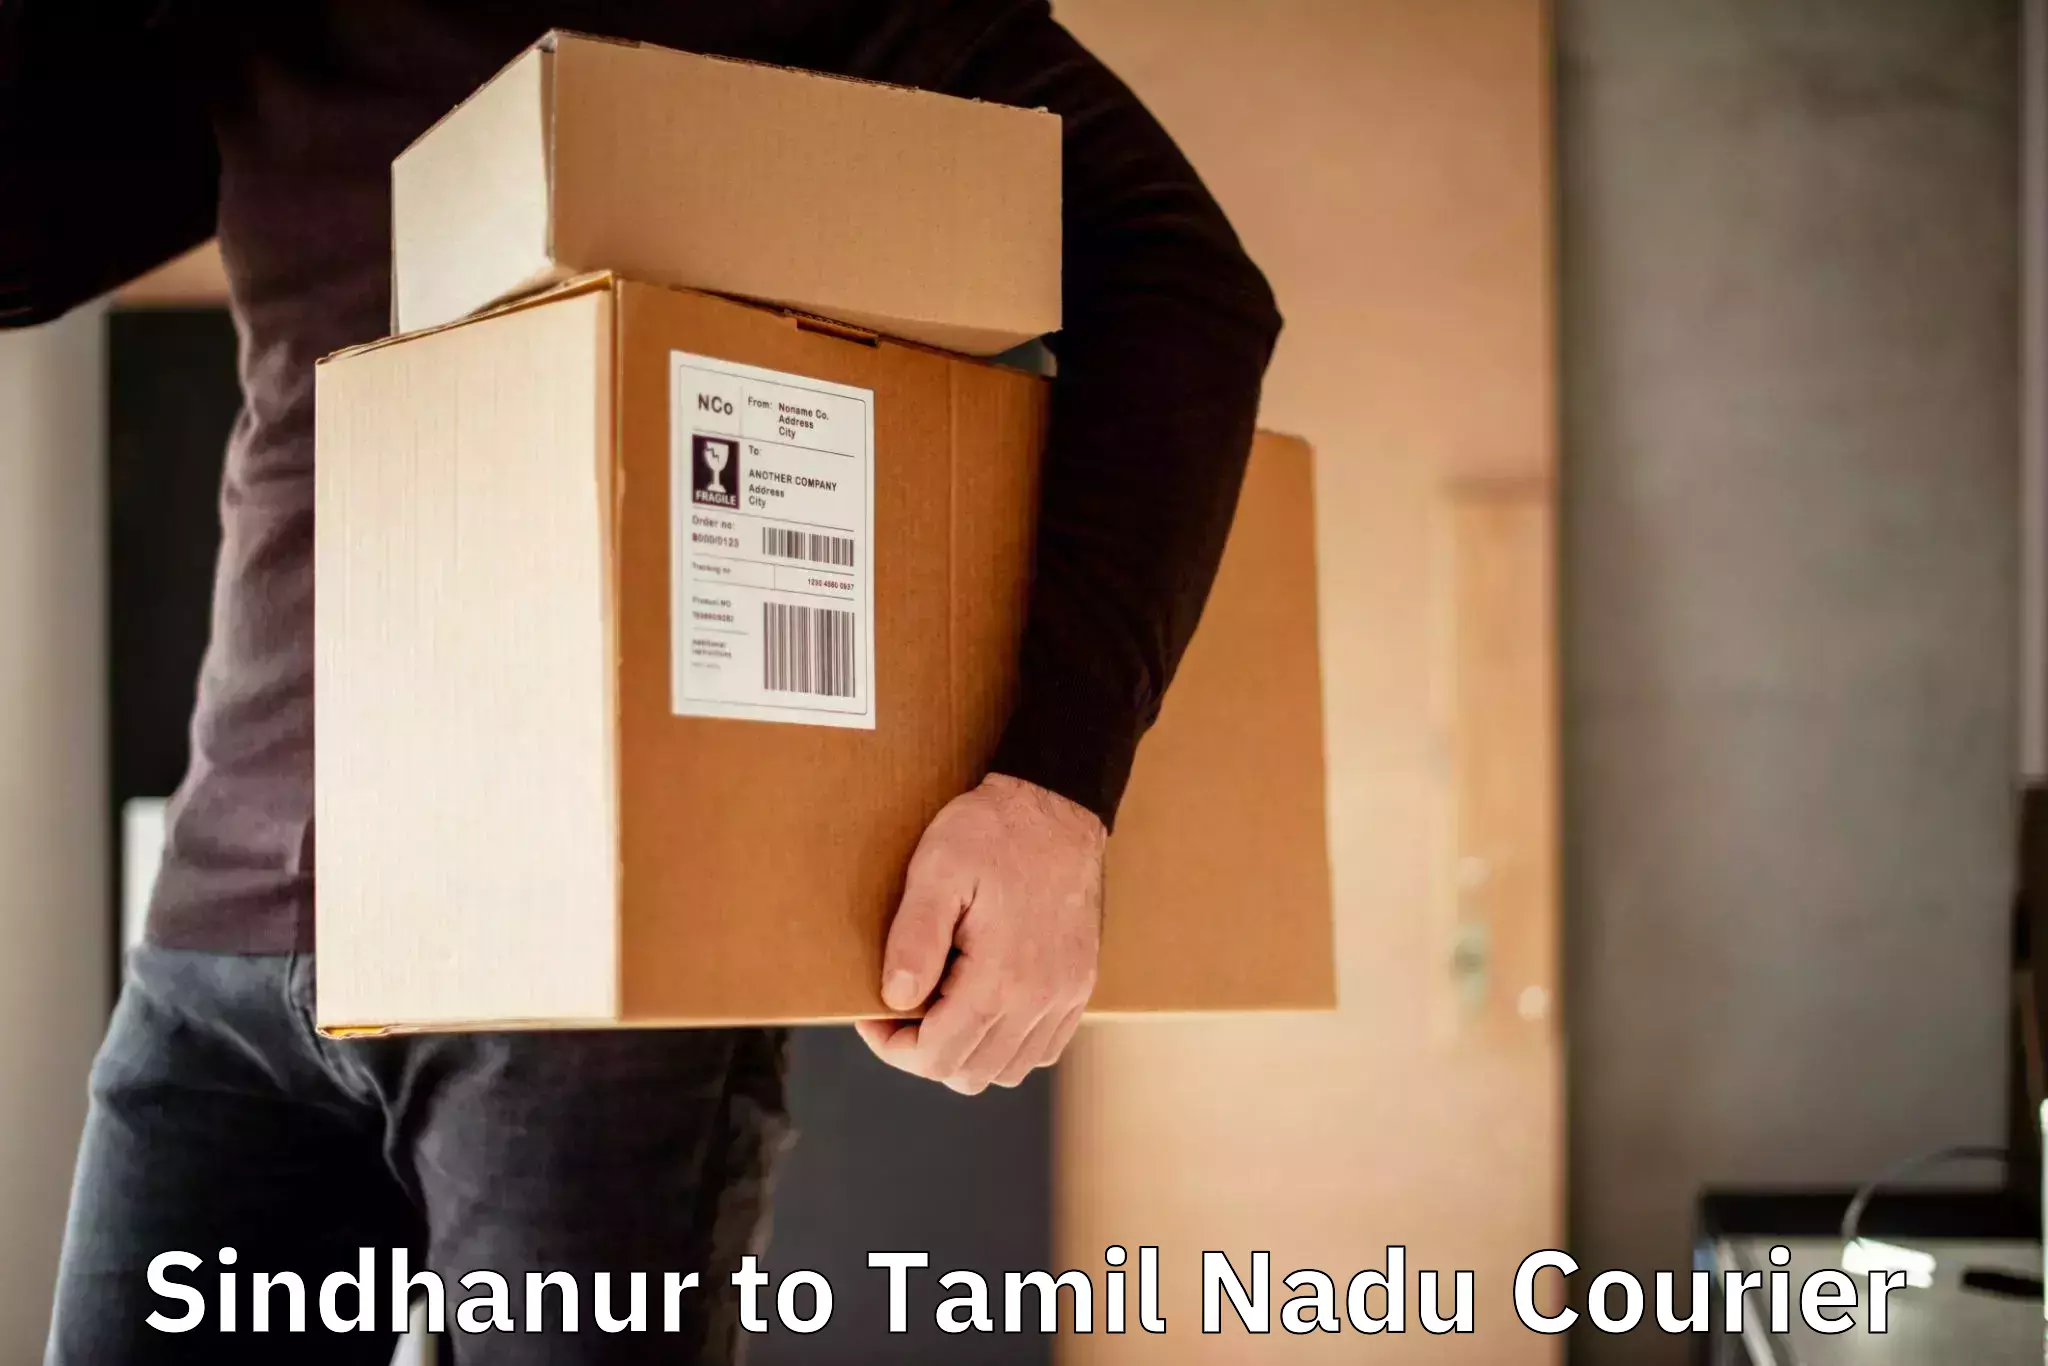 Courier app Sindhanur to Tamil Nadu